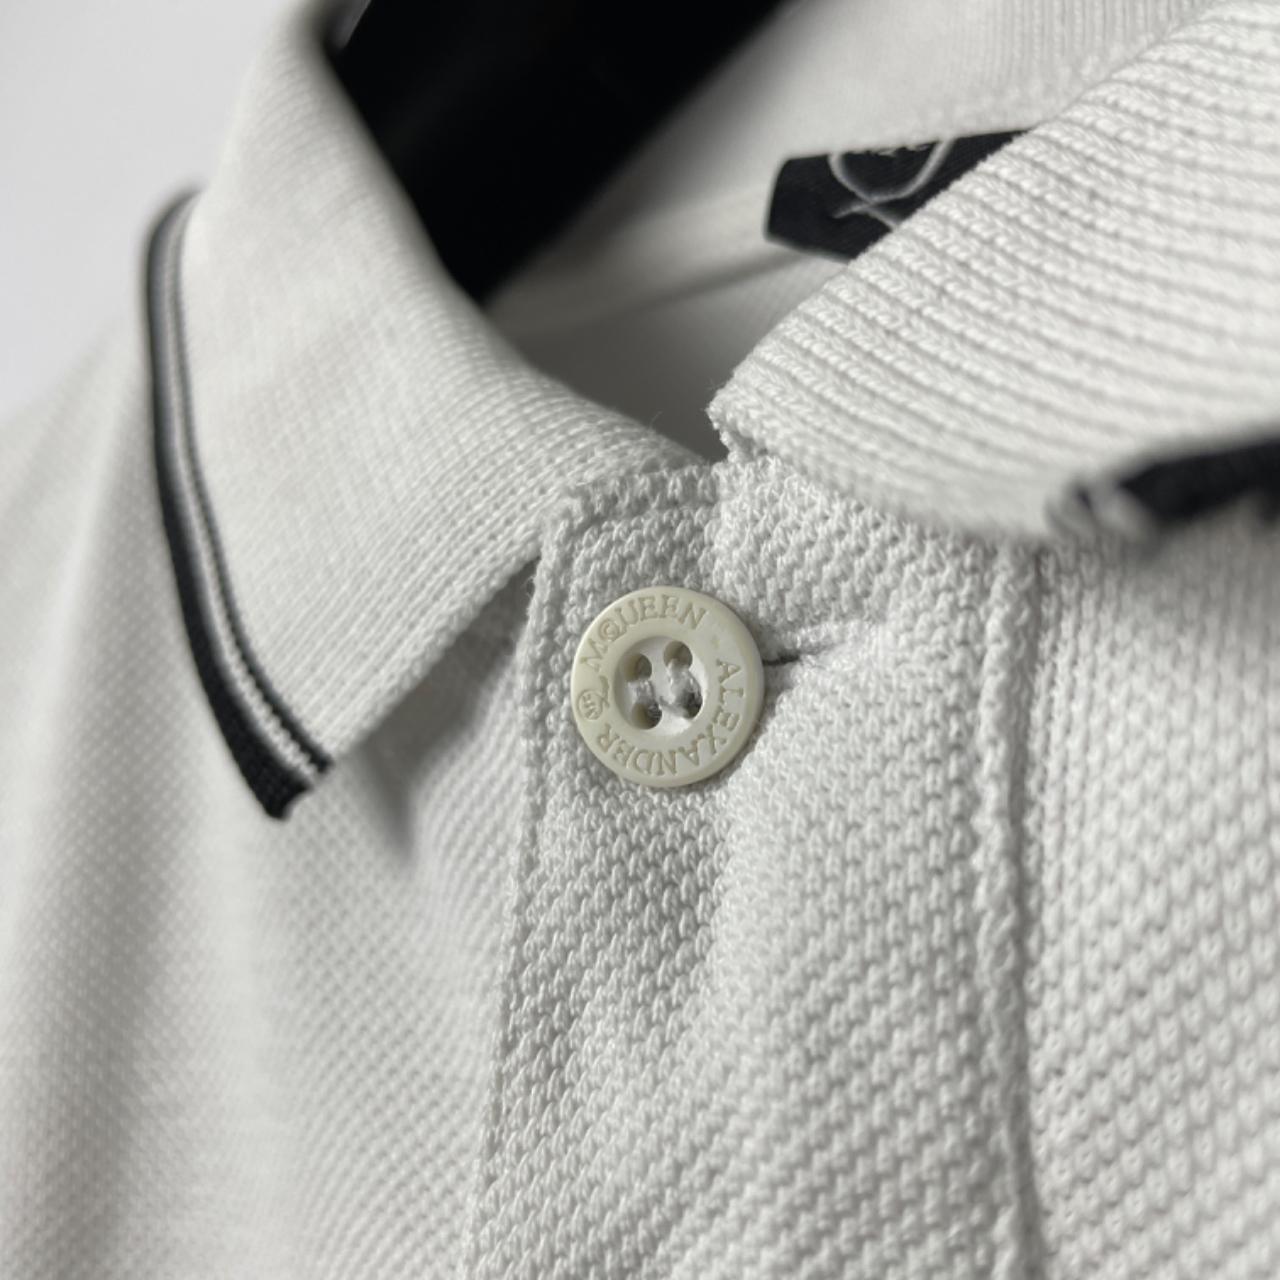 Alexander McQueen Logo White Polo Shirt Total... - Depop